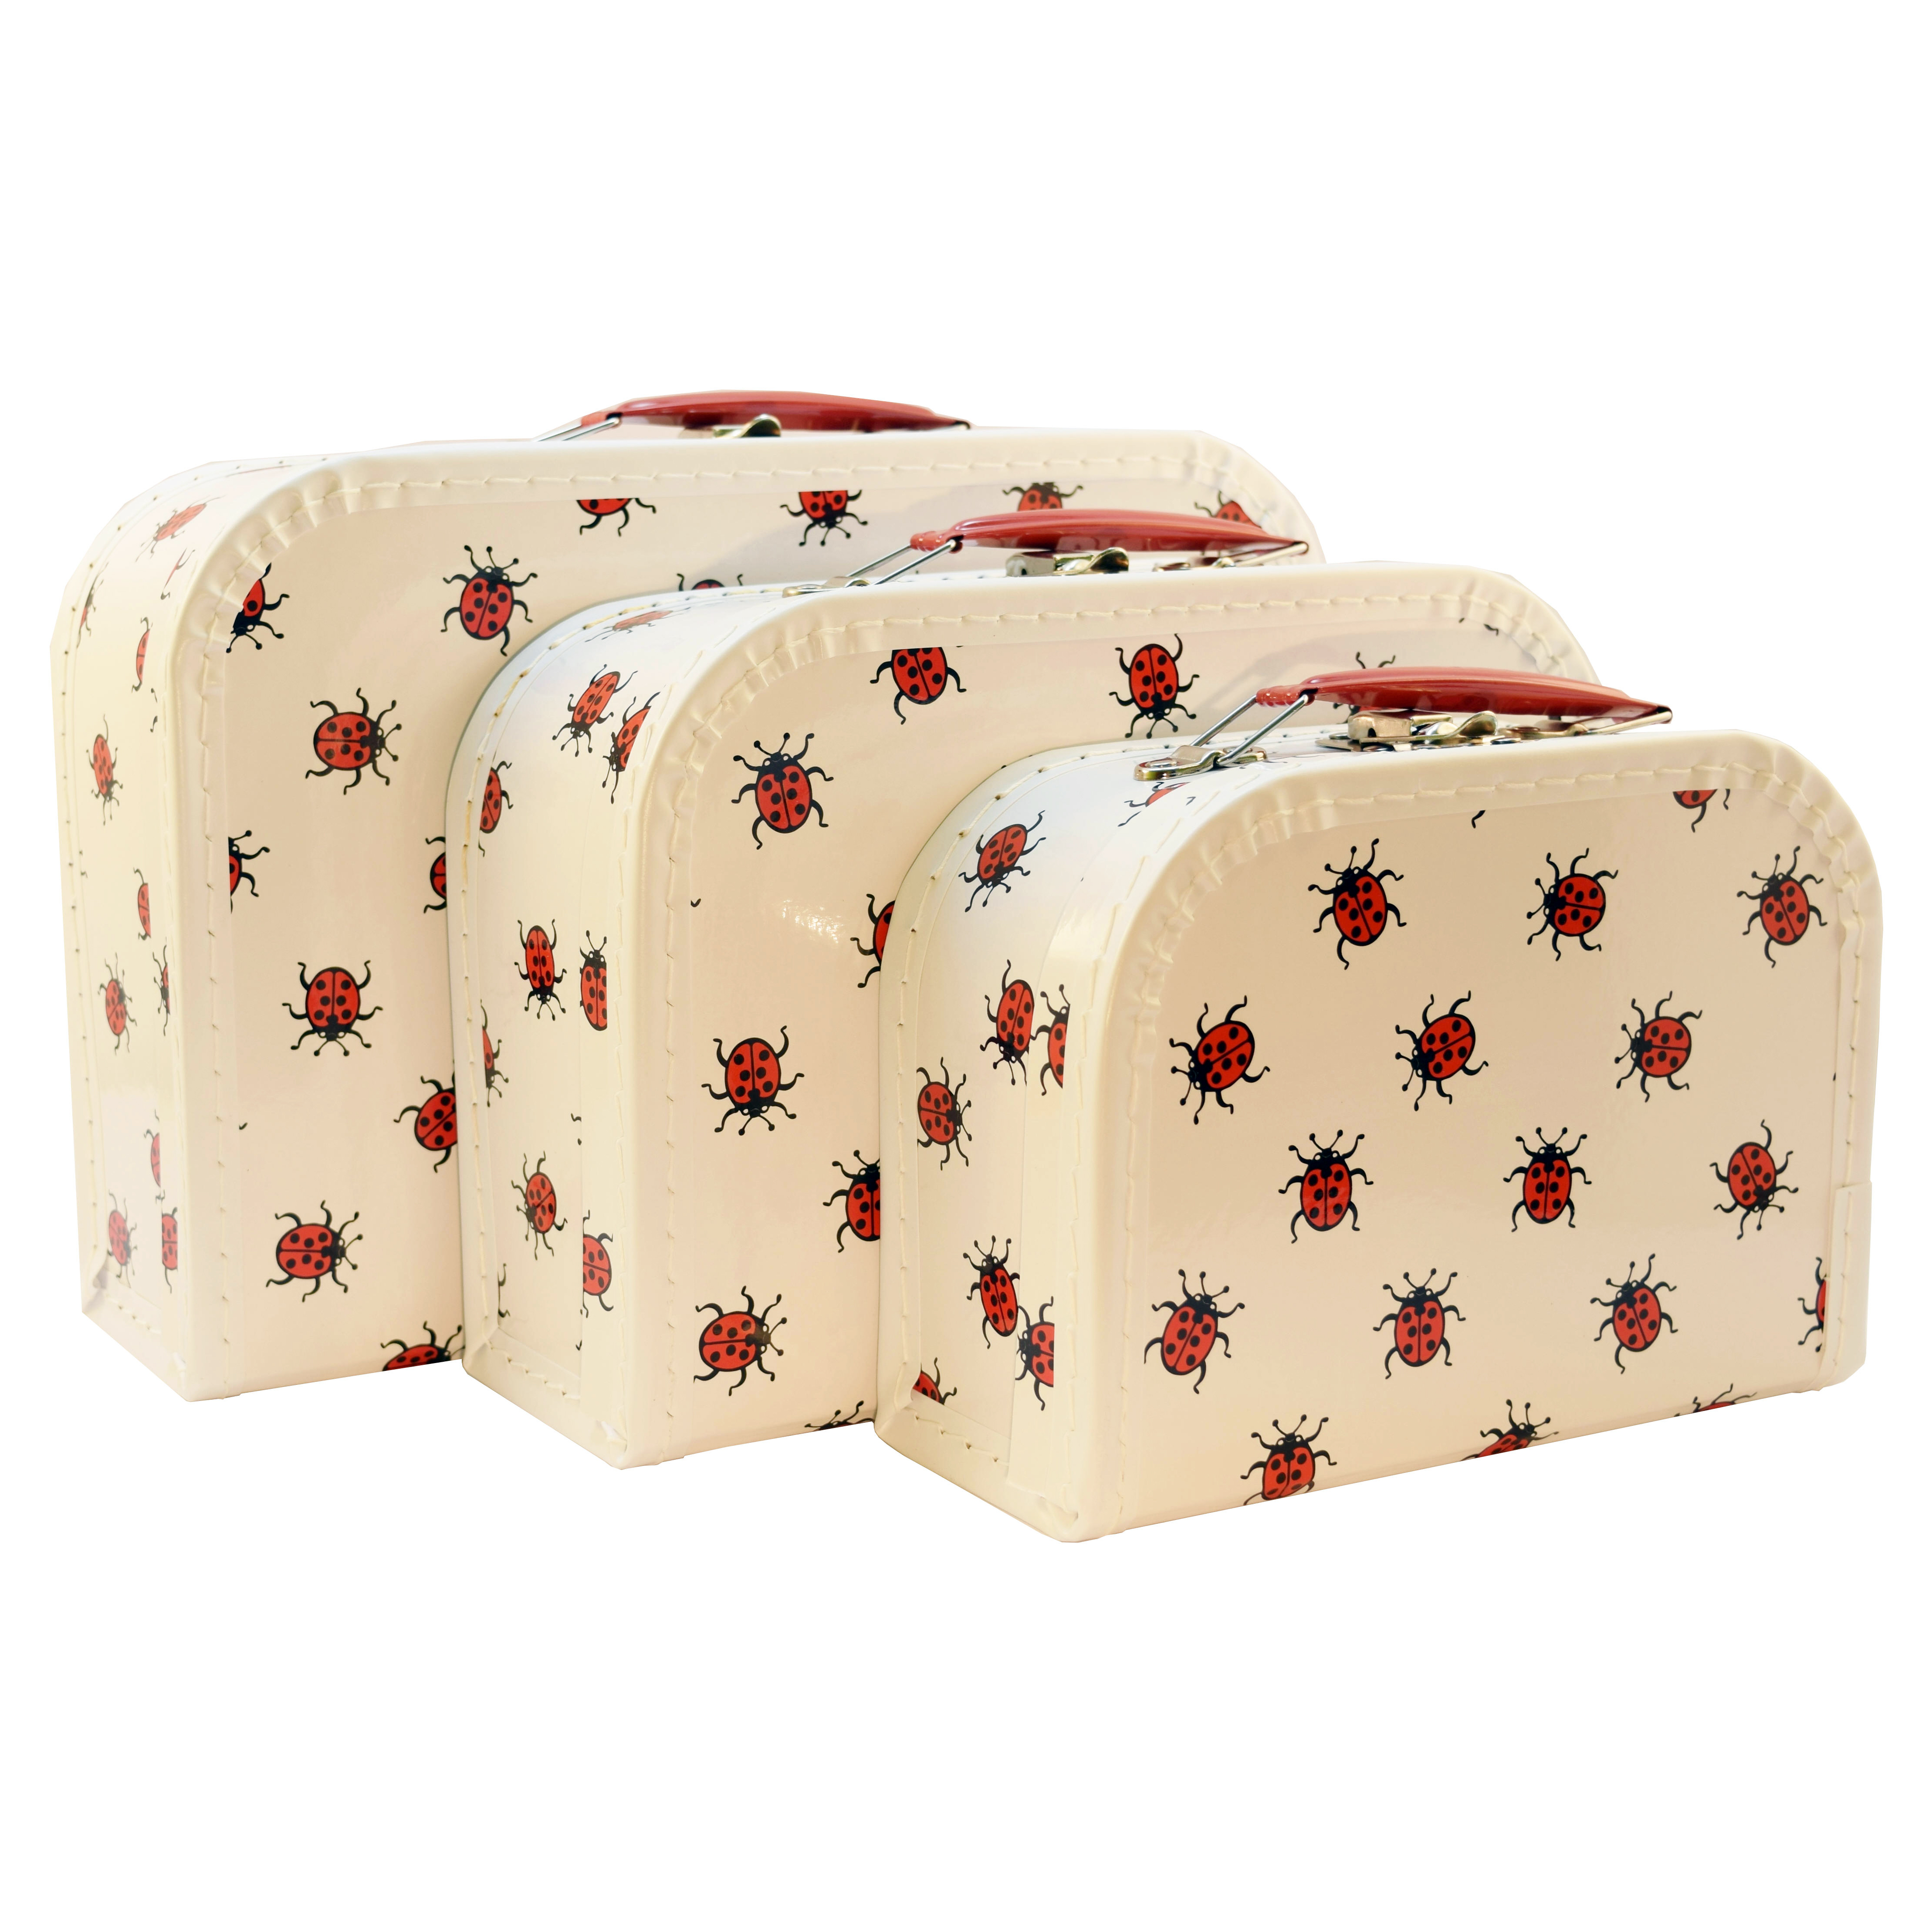 KERSA children’s suitcase set 3 pcs. ladybirds